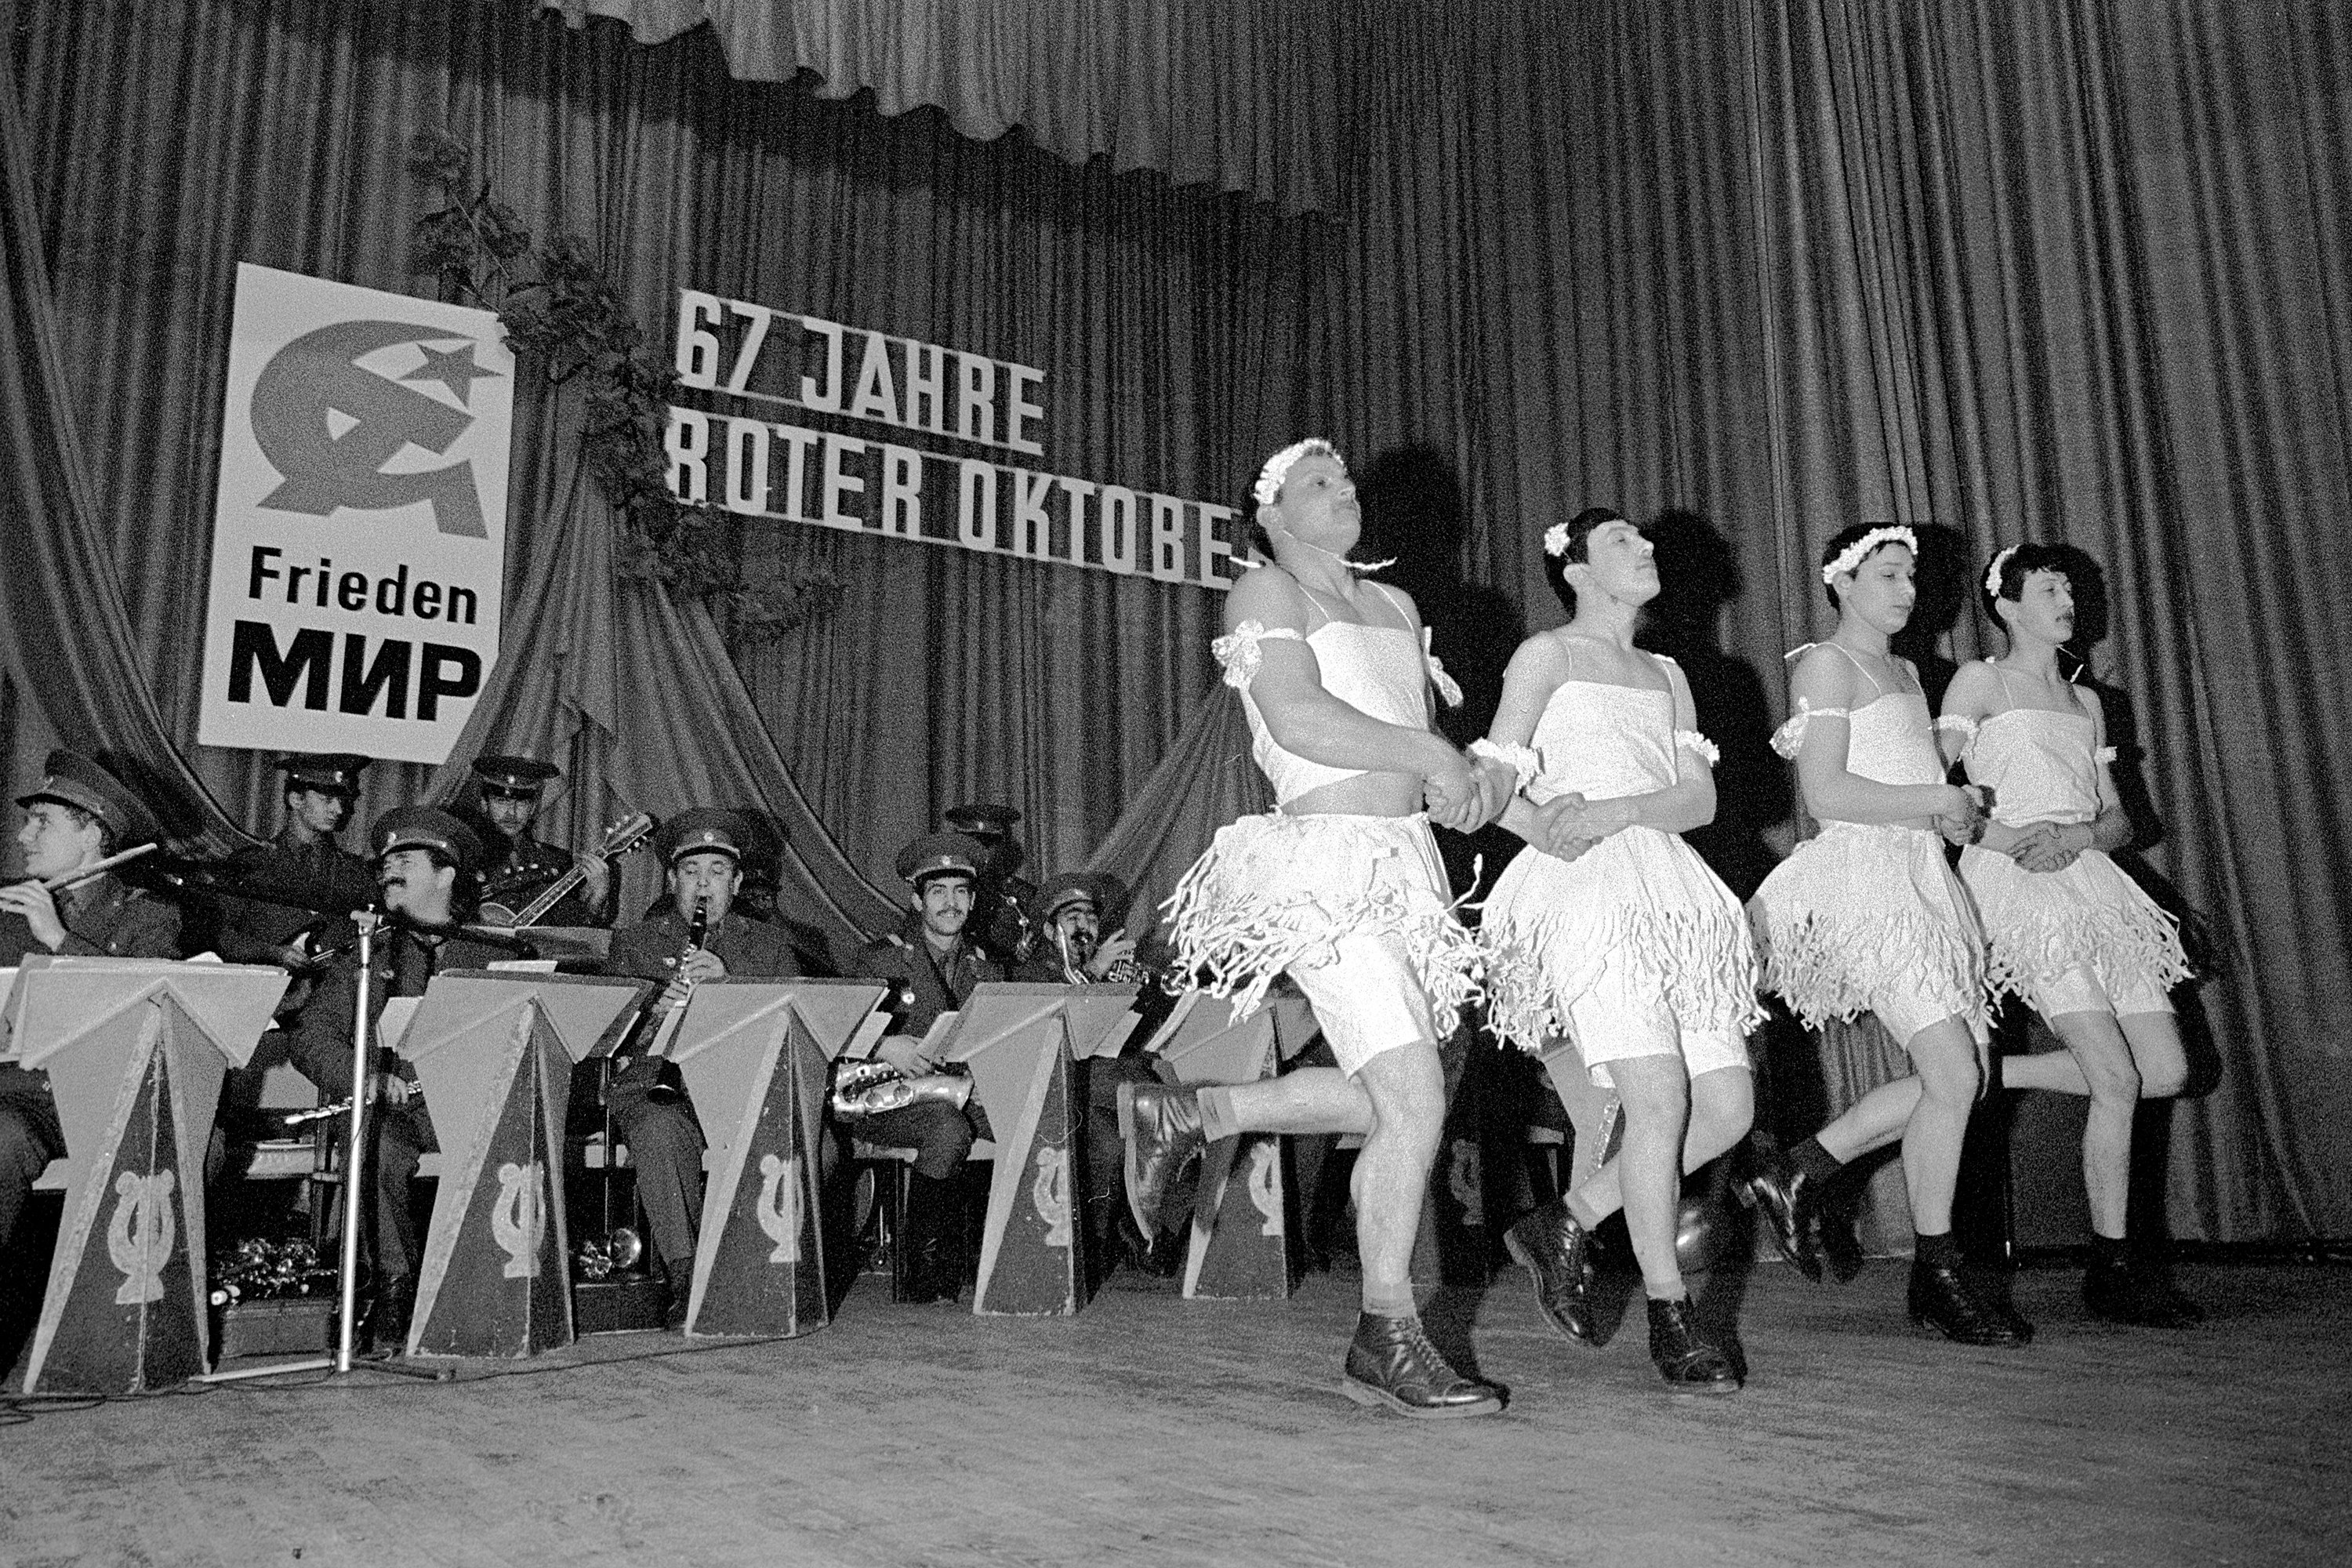 Gerhard Weber
Ballett der russischen Soldaten im Volkshaus,
Grimma, 1984